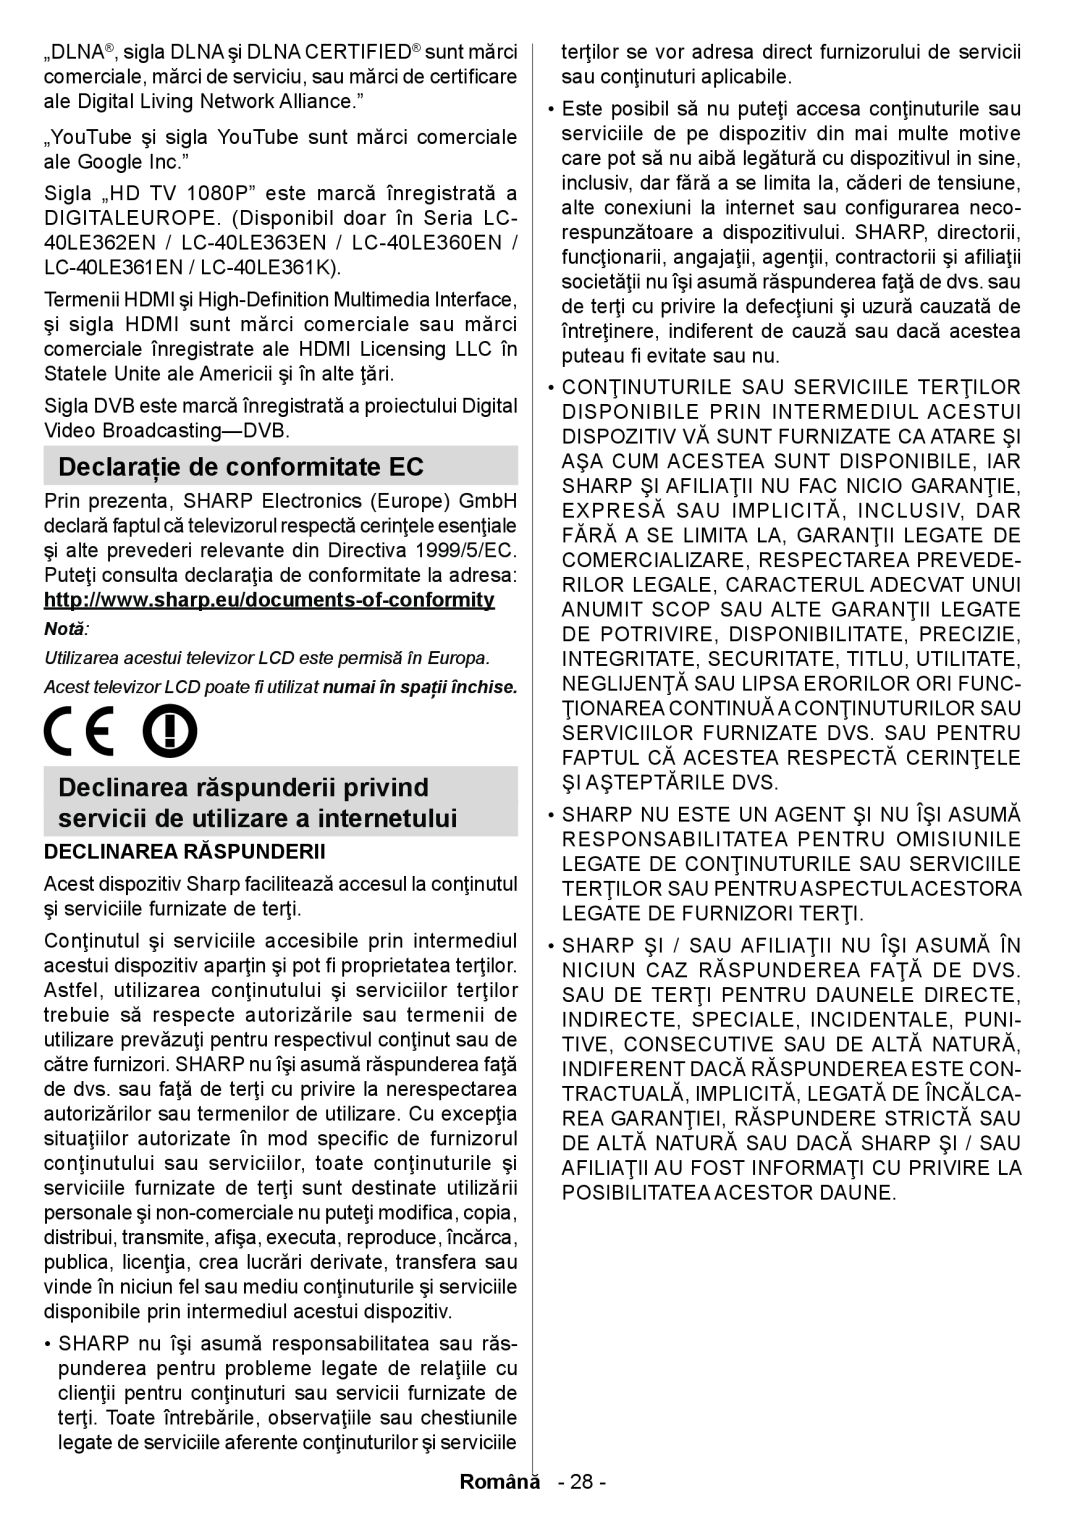 Sharp LC-32LE363EN / LC-40LE360EN operation manual Declaraţie de conformitate EC, Declinarea Răspunderii, Română 